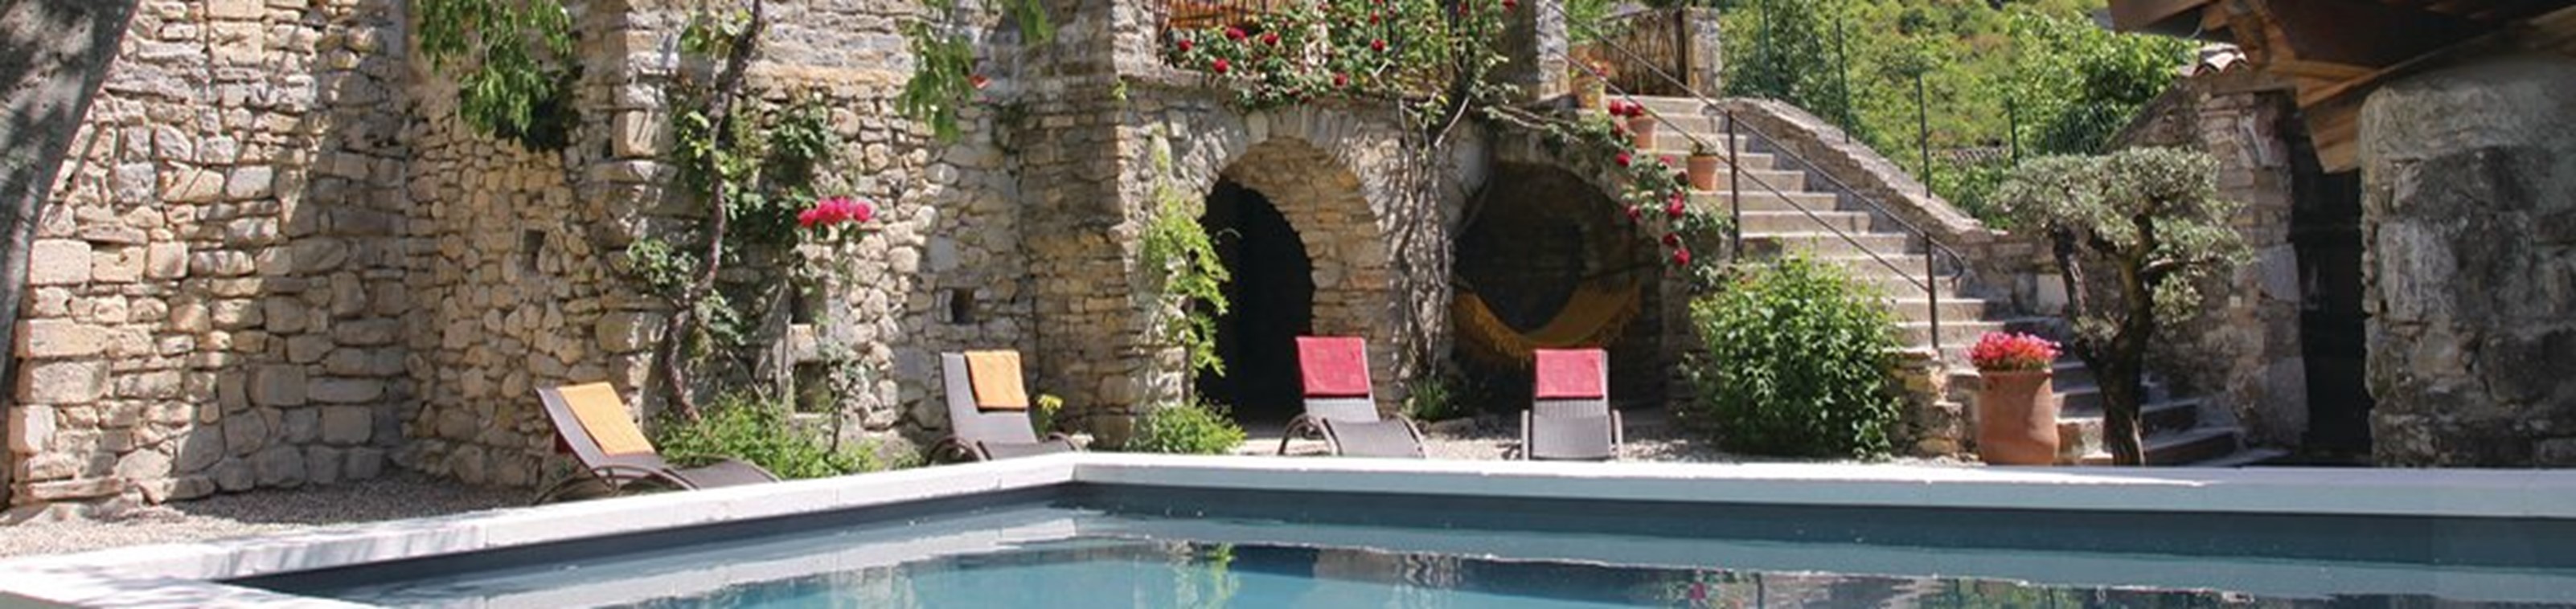 Vakantiehuis Ardèche in middeleeuws dorp